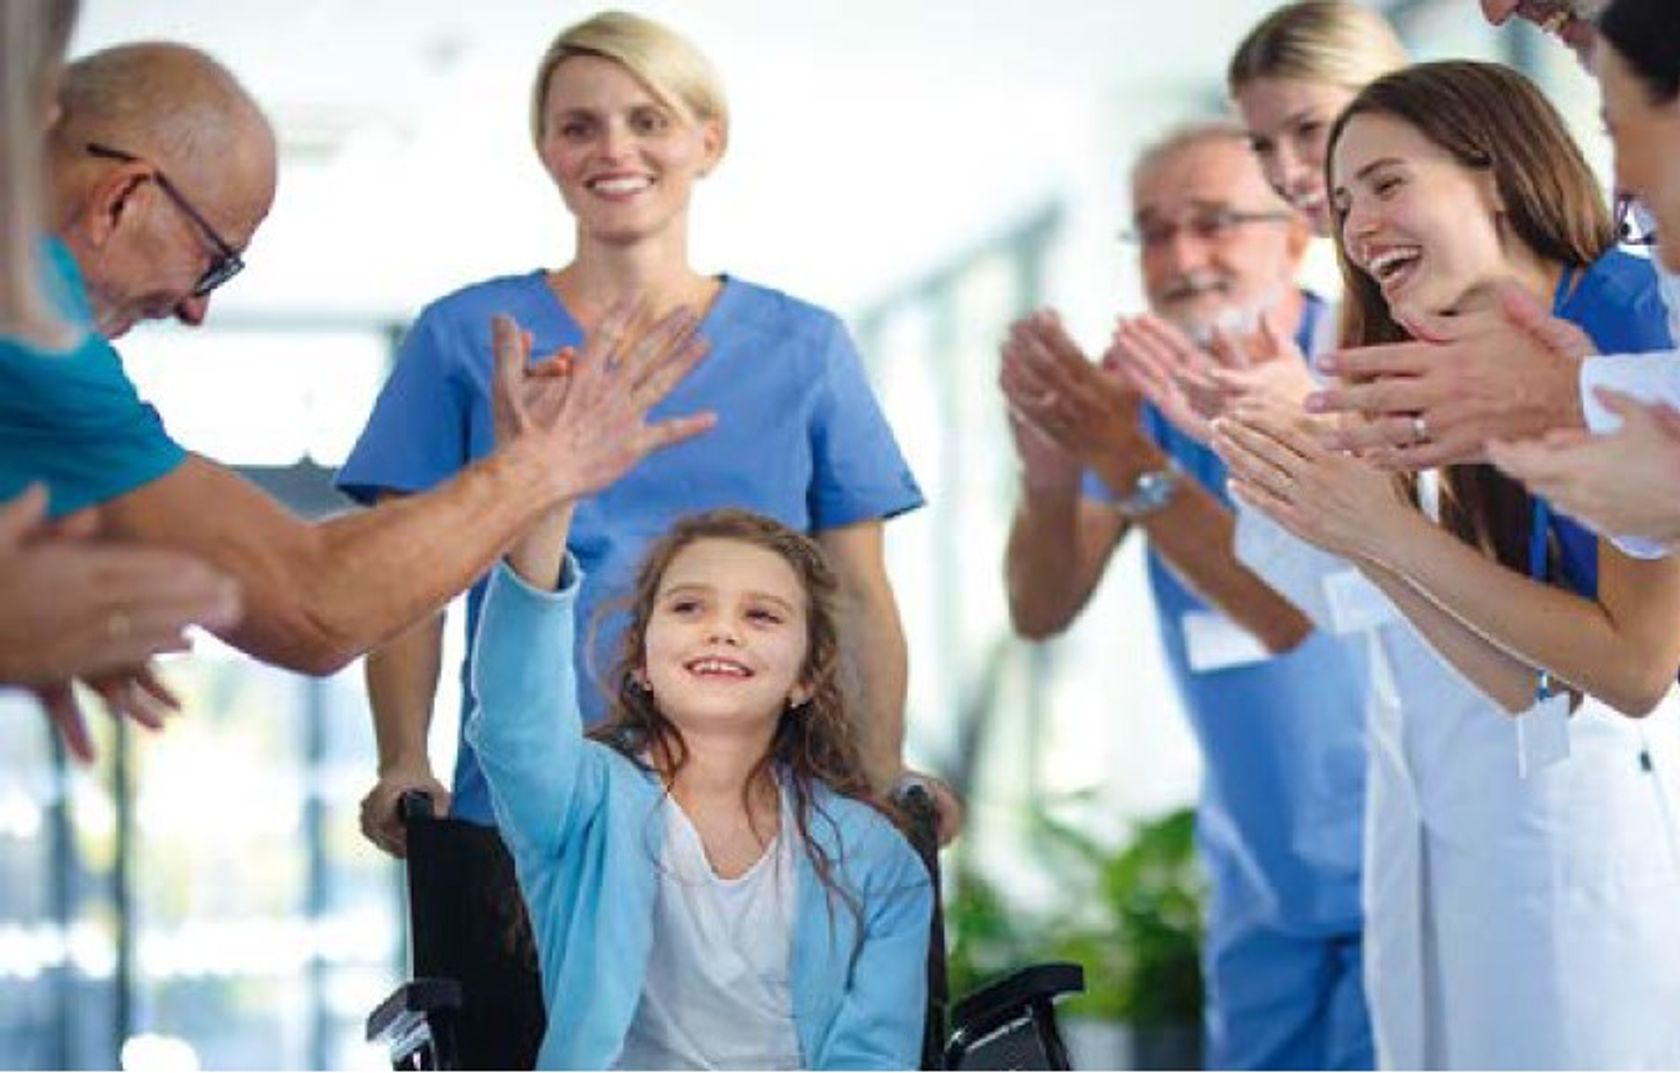 Ein blasses Mädchen sitzt im Rollstuhl und wird umringt von medizinischem Personal in blauer Arbeitskleidung, die lachen und ihr applaudieren.